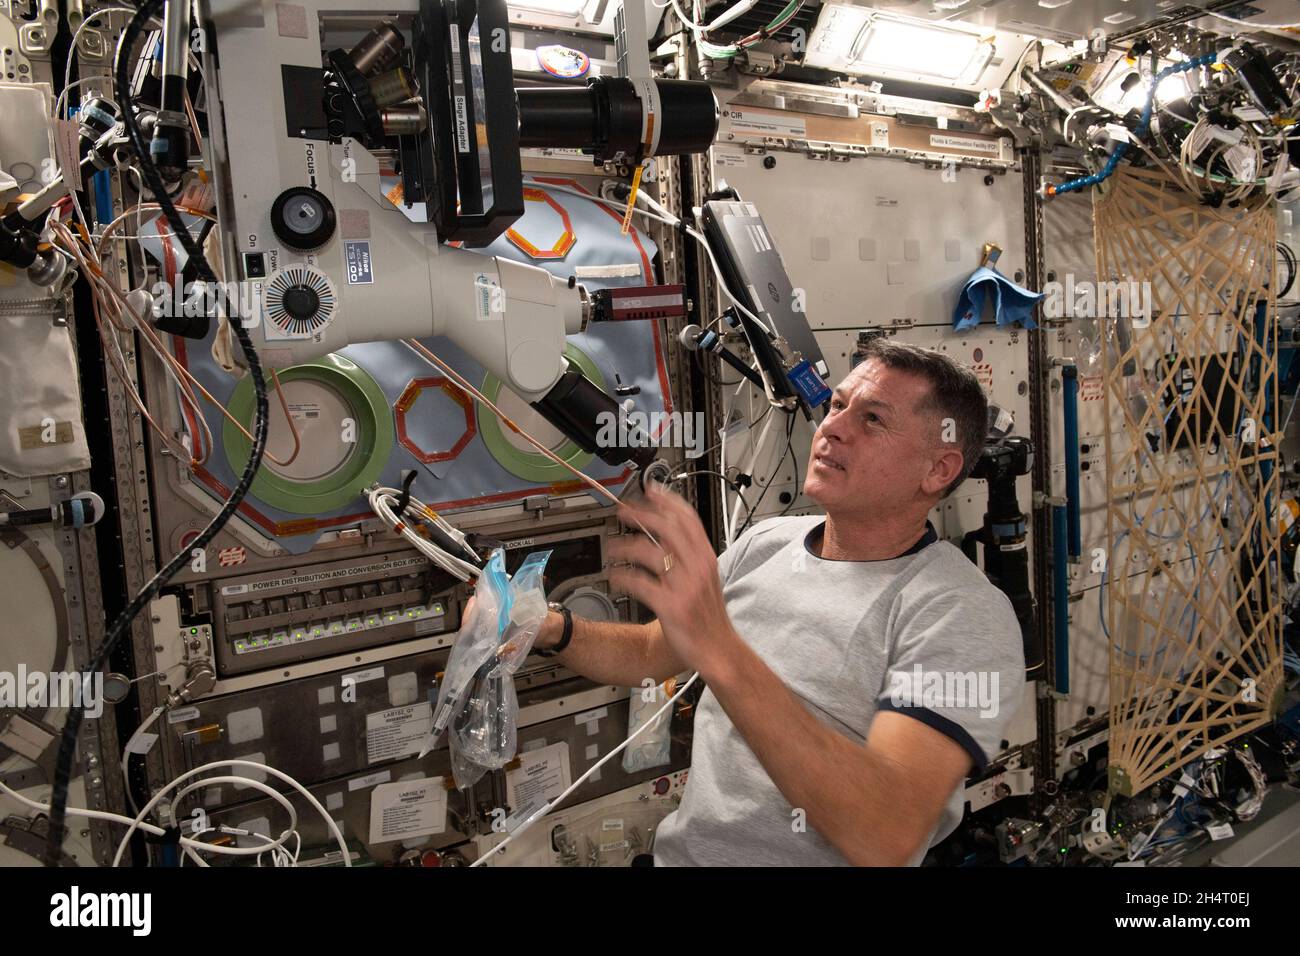 Der NASA-Astronaut und Expedition 65-Flugingenieur Shane Kimbrough richtet im US-Destiny-Labormodul ein Mikroskop ein, um Proben für das Real-Time Protein Crystal Growth Experiment zu beobachten und zu fotografieren. Die Ergebnisse haben Auswirkungen auf Biotechnologie- und Pharmaunternehmen auf der Erde und könnten die Kommerzialisierung des Weltraums am 31. Mai 2021 vorantreiben. Quelle: NASA über CNP Stockfoto